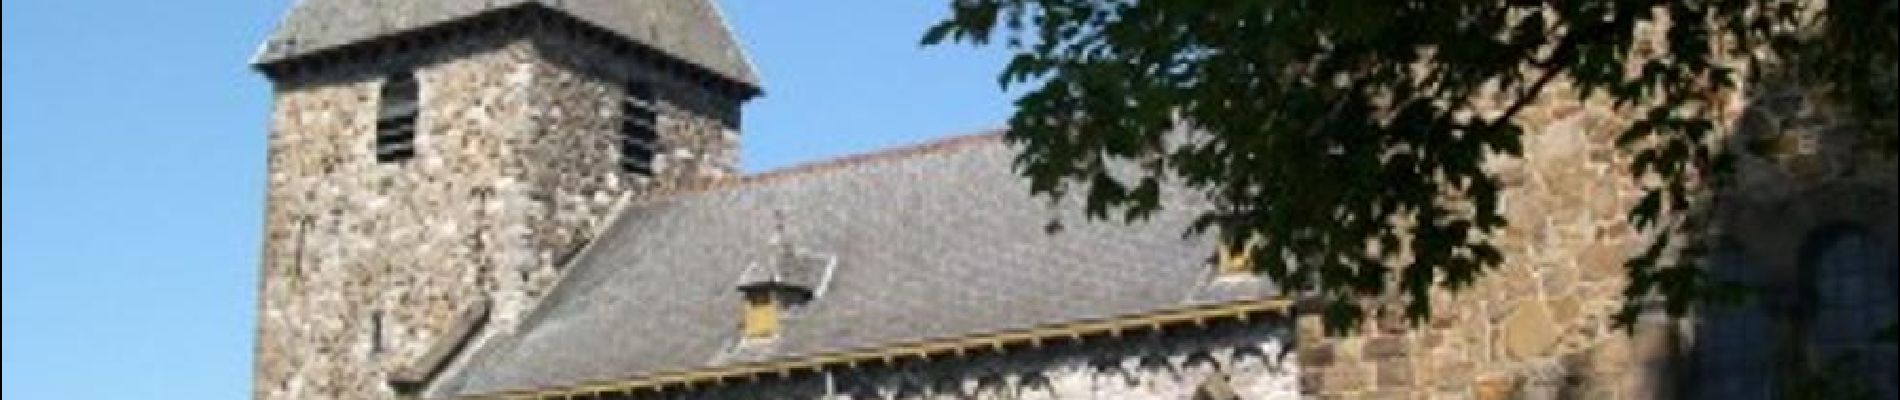 Point d'intérêt Andenne - Eglise Saint-Pierre dite des Sarrasins d'Andenelle - Photo